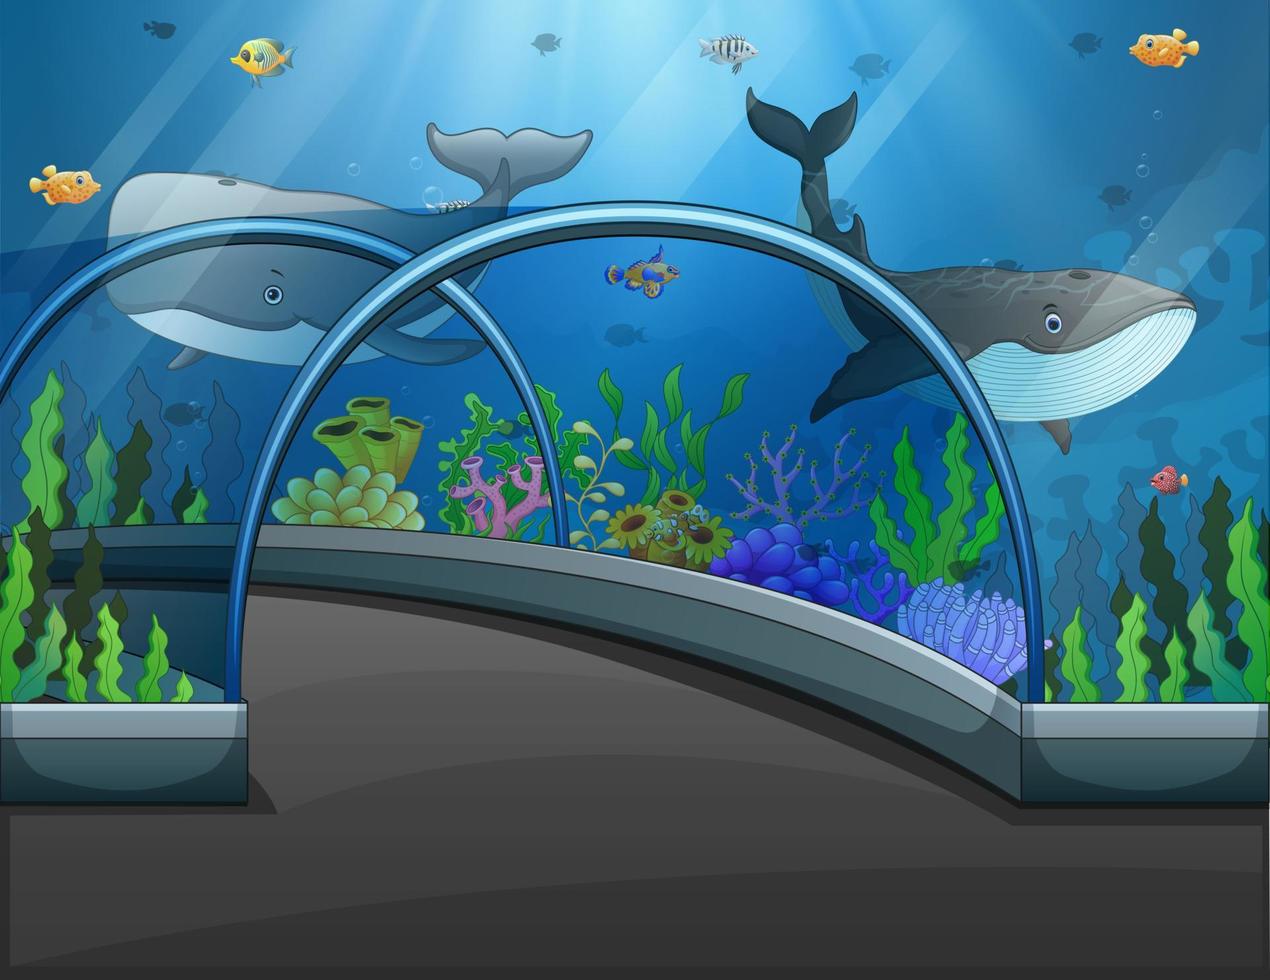 Aquarium scene with sea animals illustration vector